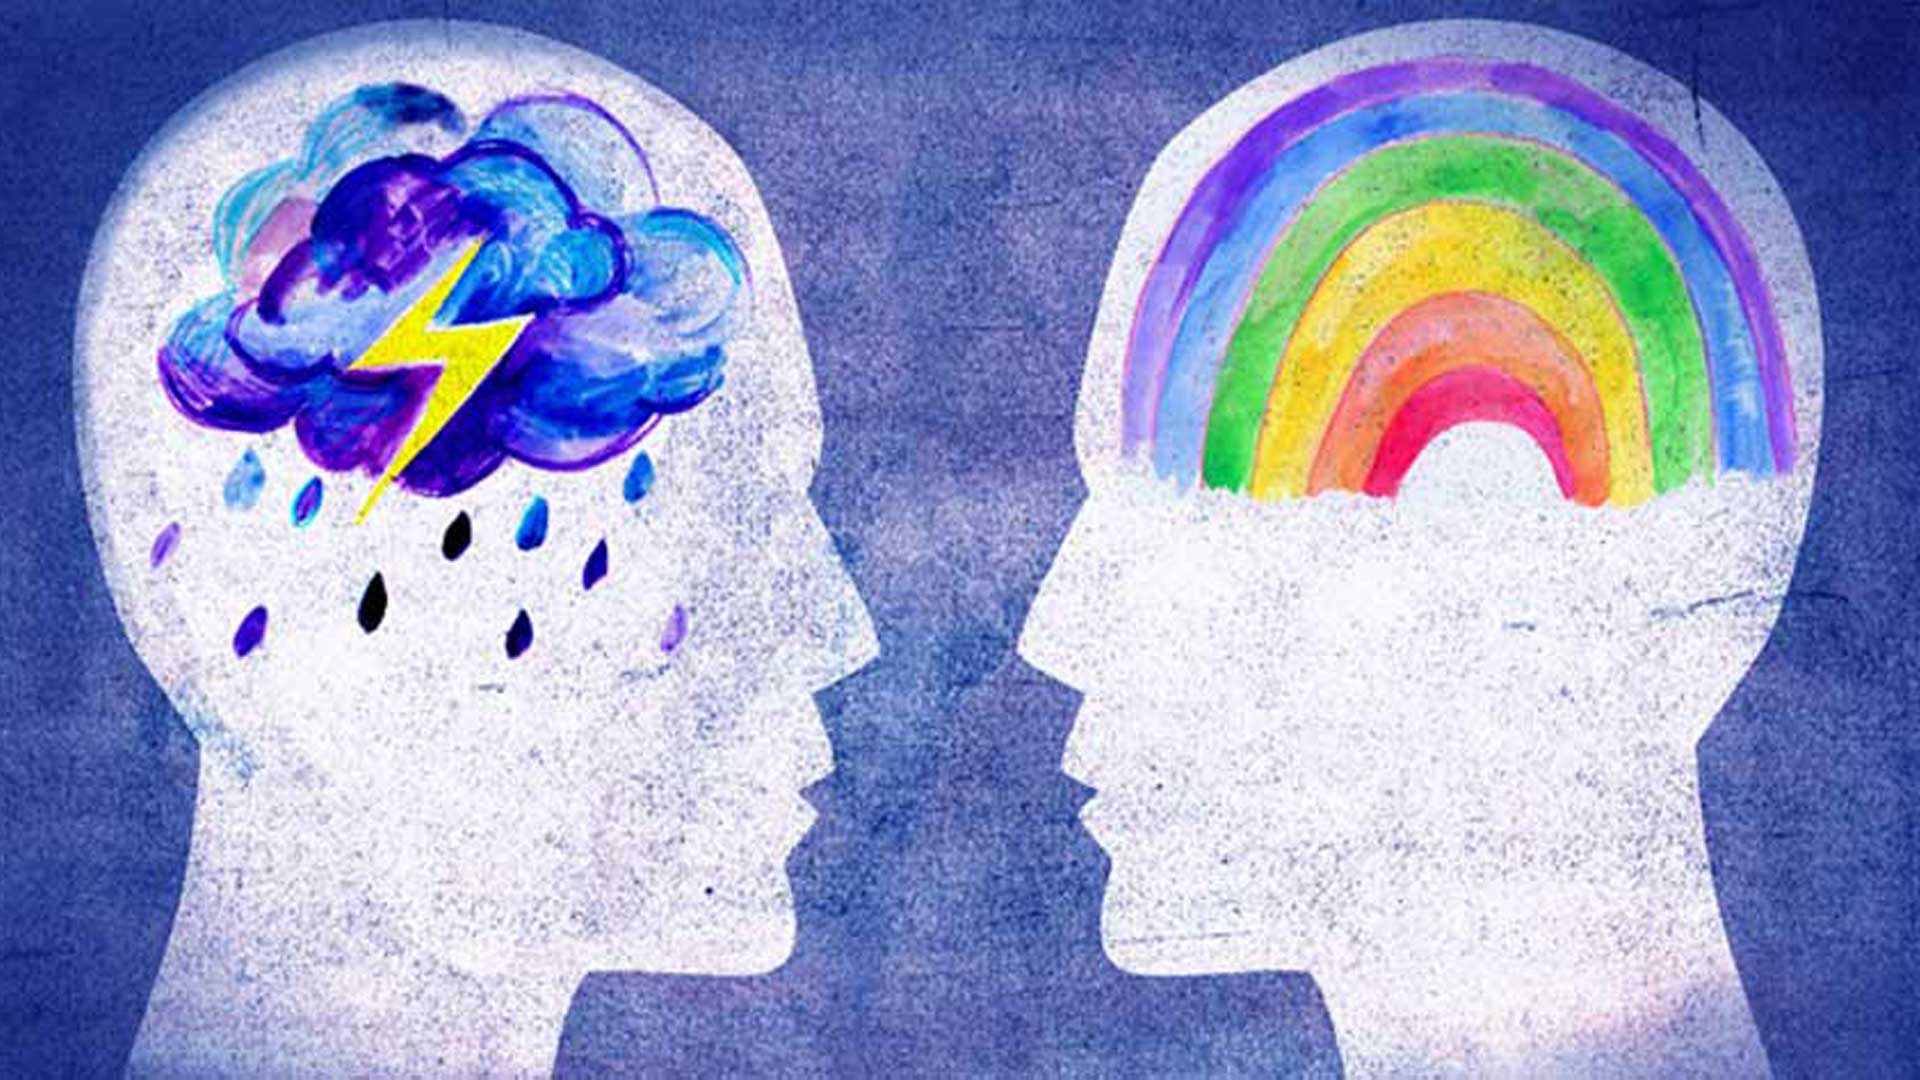 δύο ανθρώπινα κεφάλια όπου στον αριστερό απεικονίζονται εσωτερικά σύννεφα με κεραυνό και στον δεξιό ένα ουράνιο τόξο δείχνουν τα οφέλη του εσωτερικού διαλόγου